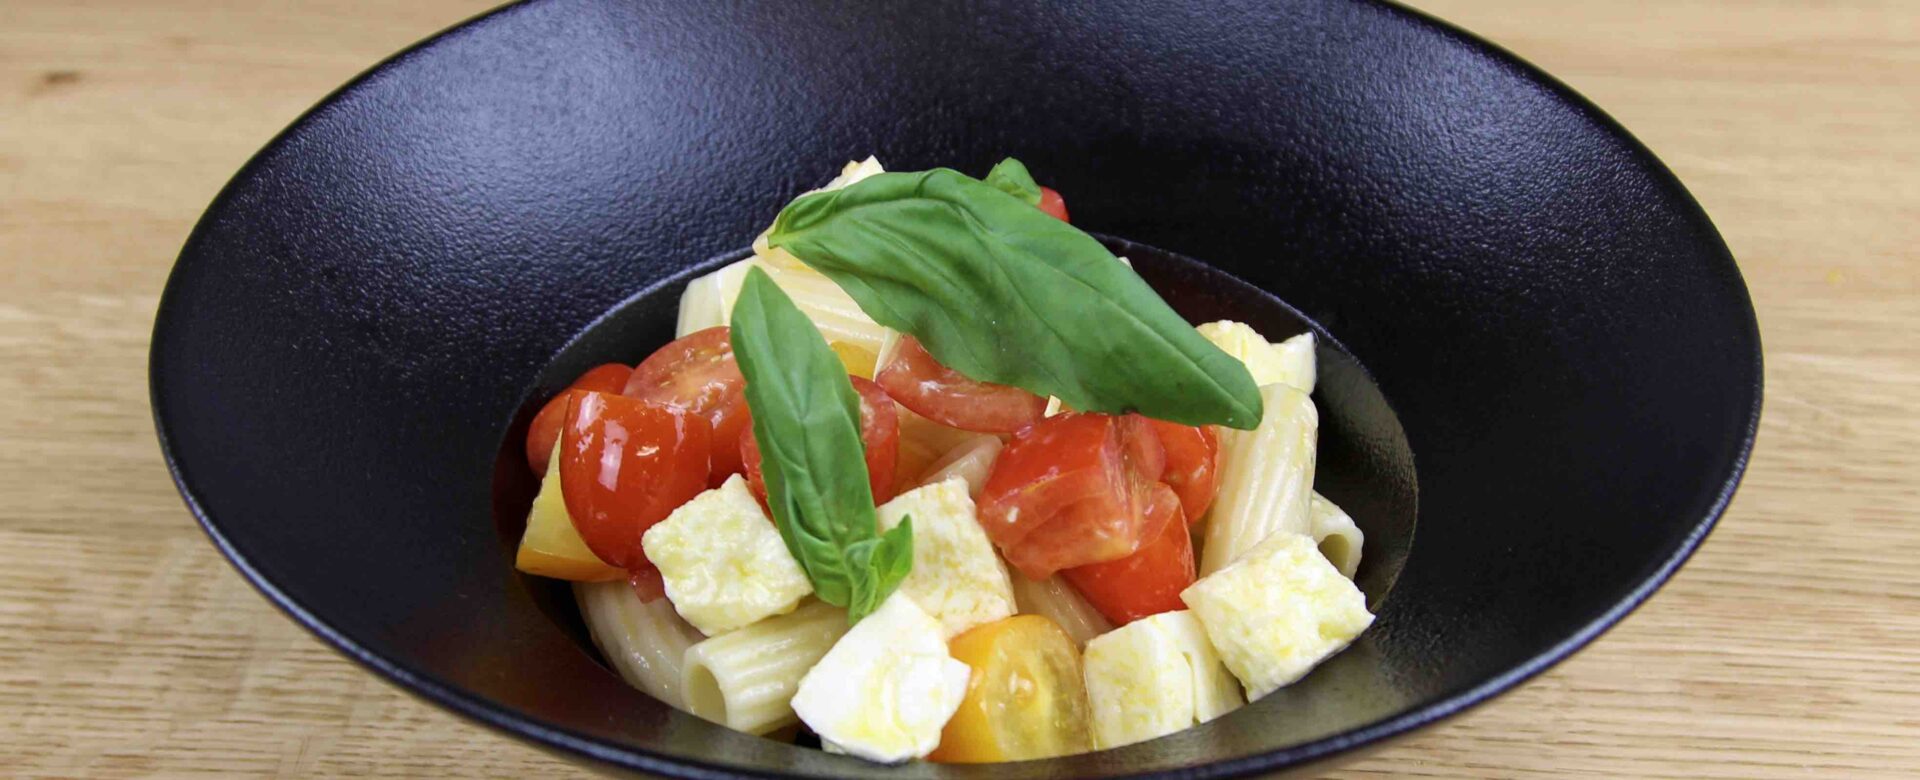 Salade Caprese met pasta